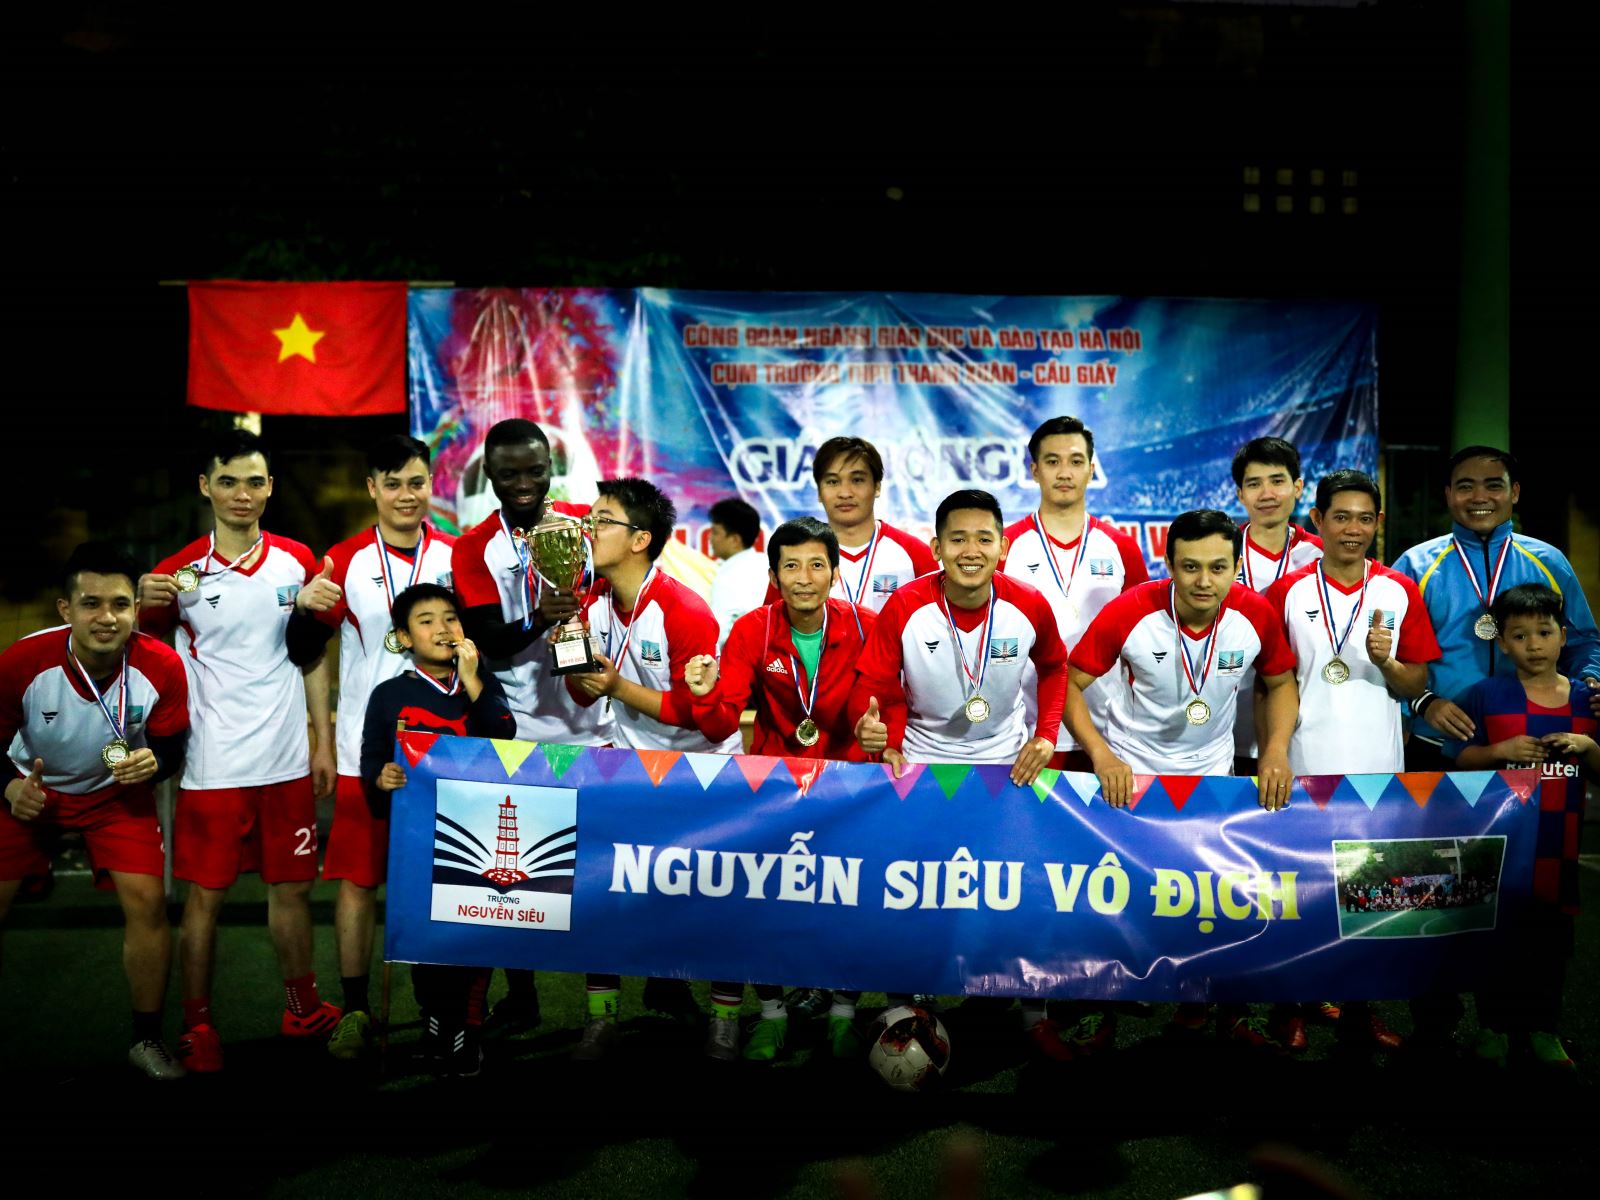 Đội bóng đá Nguyễn Siêu vô địch: Để thấy mình được yêu thương…